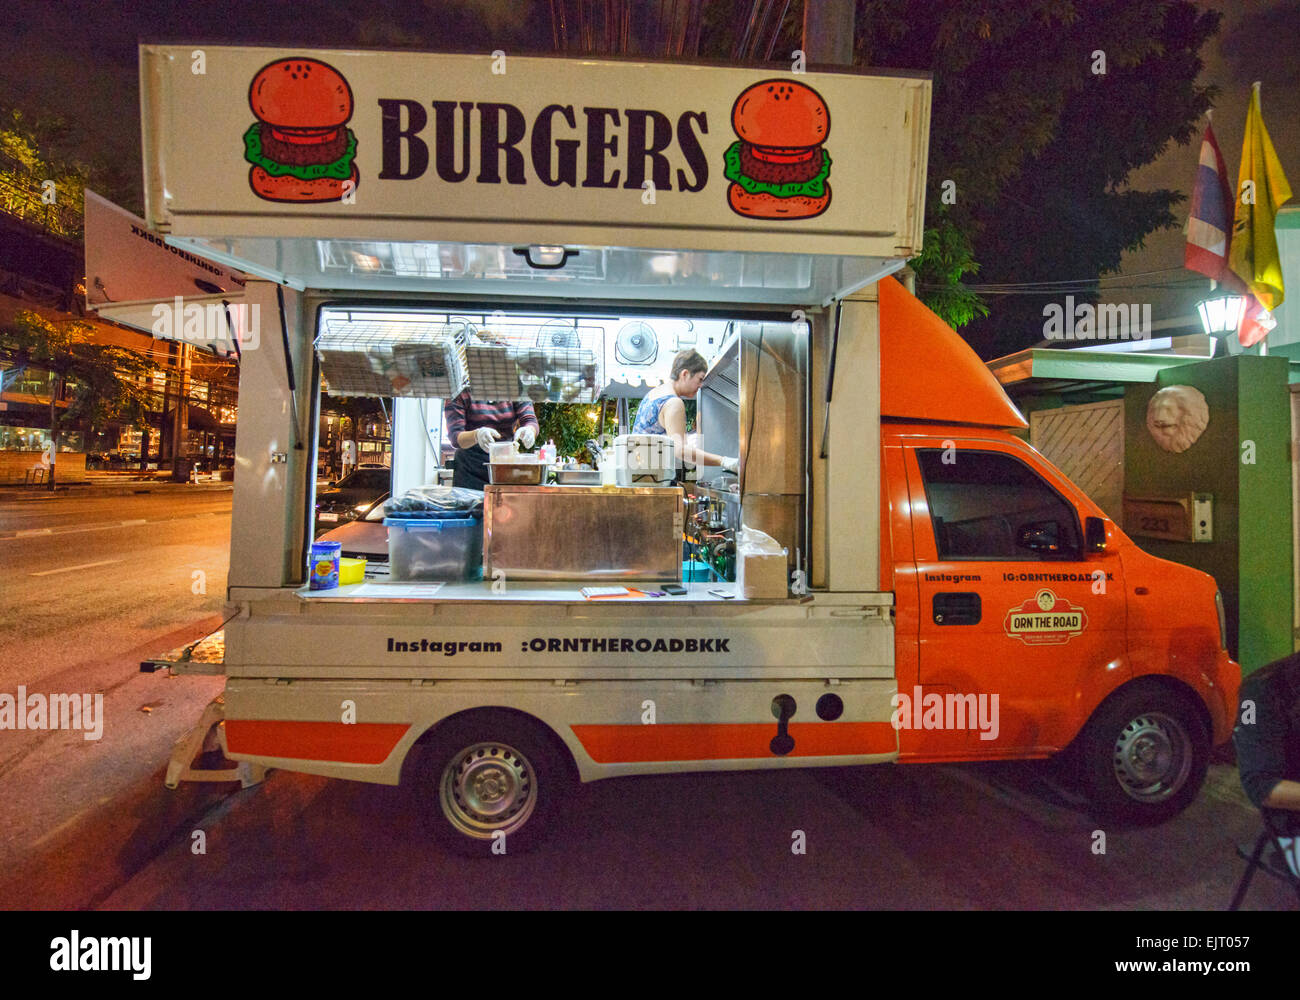 Hamburger food truck, Bangkok, Thailand Stock Photo